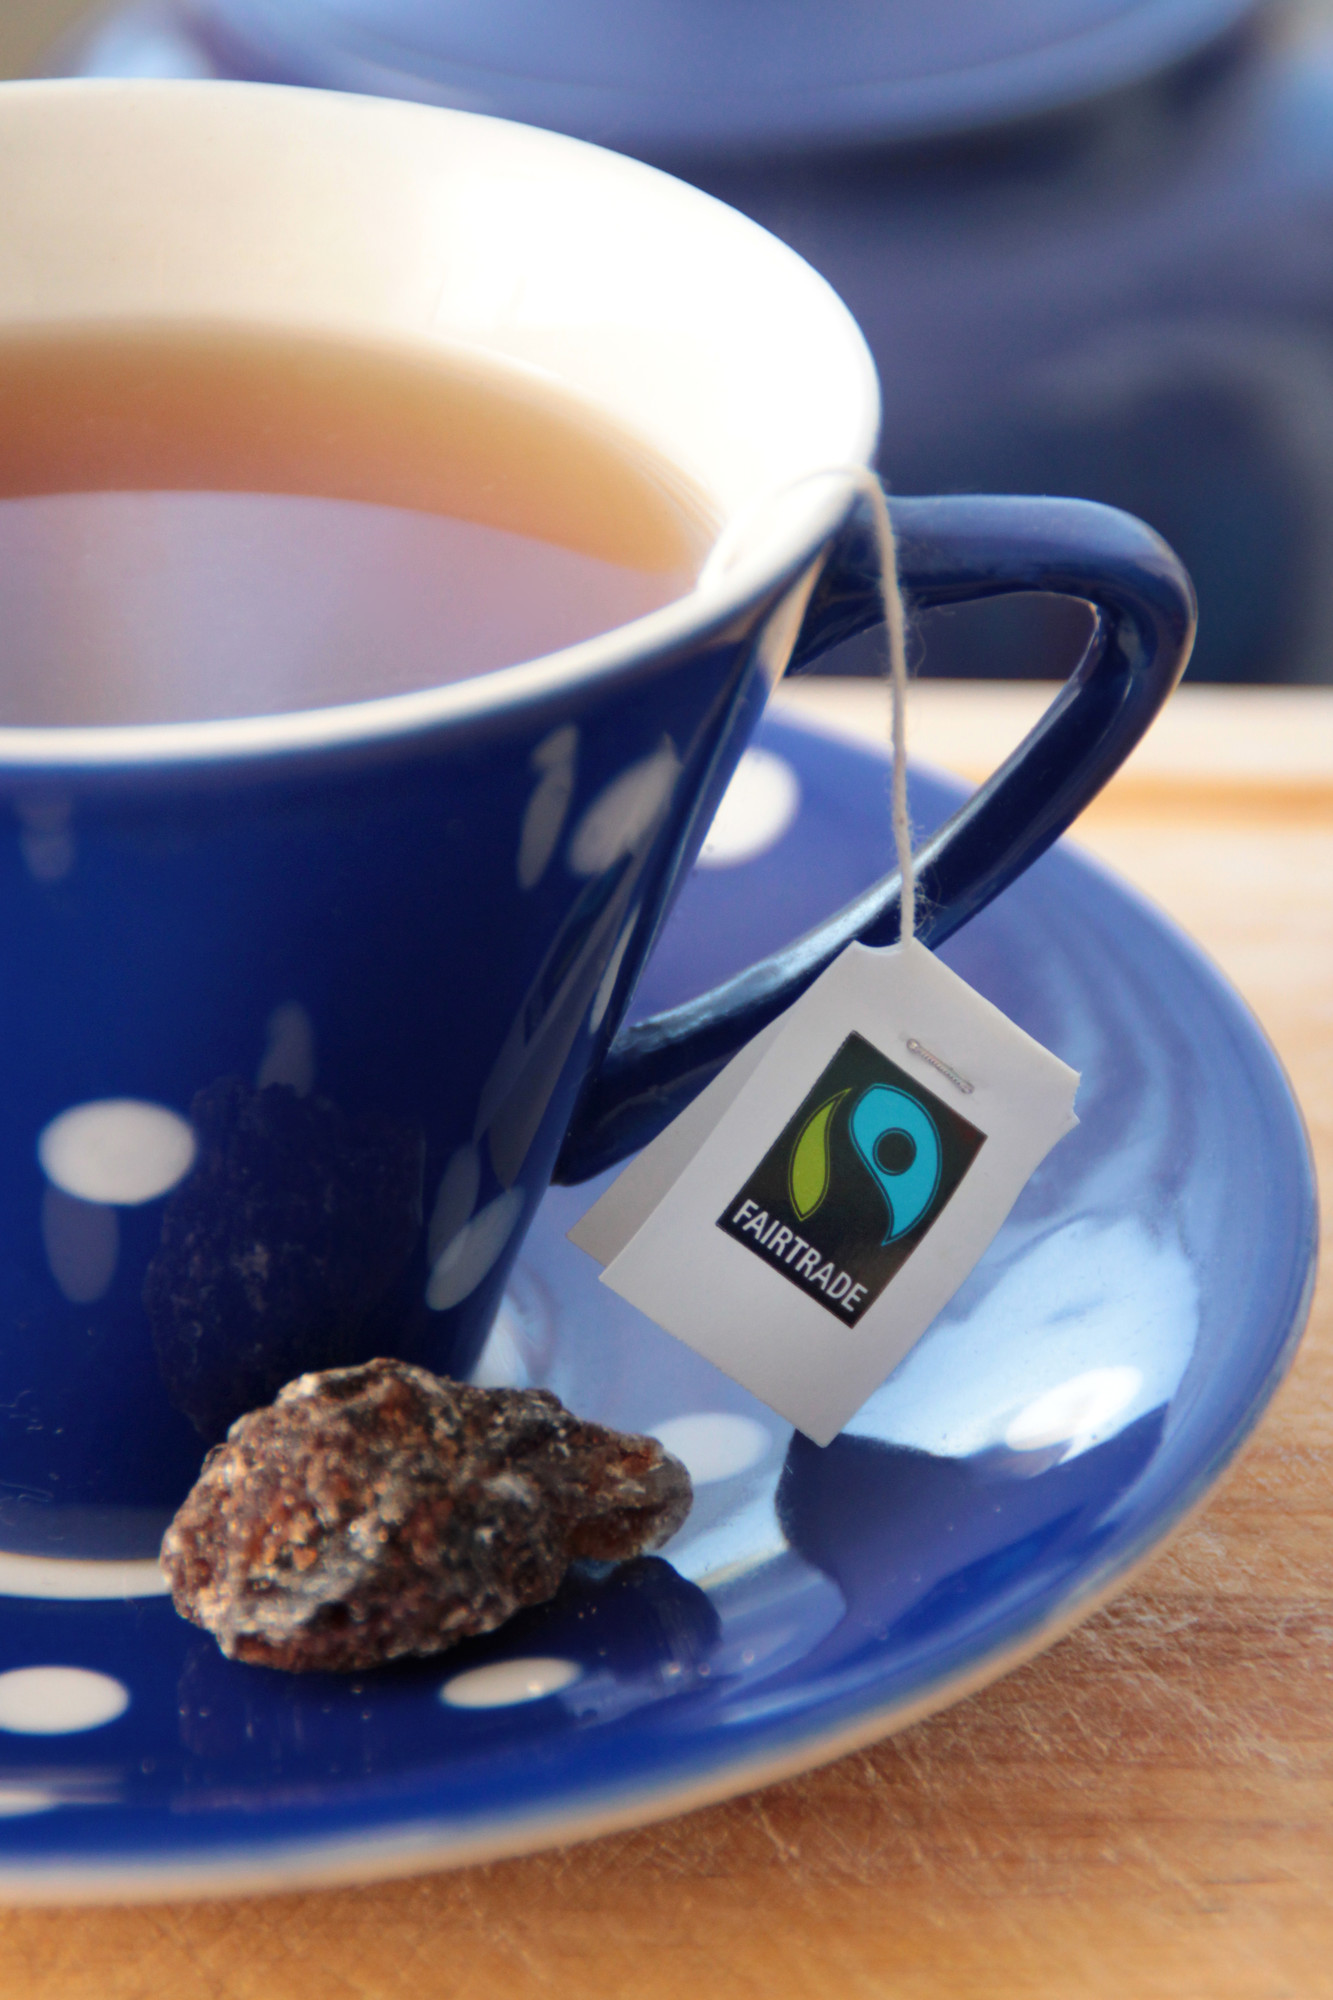 Cup of Fairtrade tea.